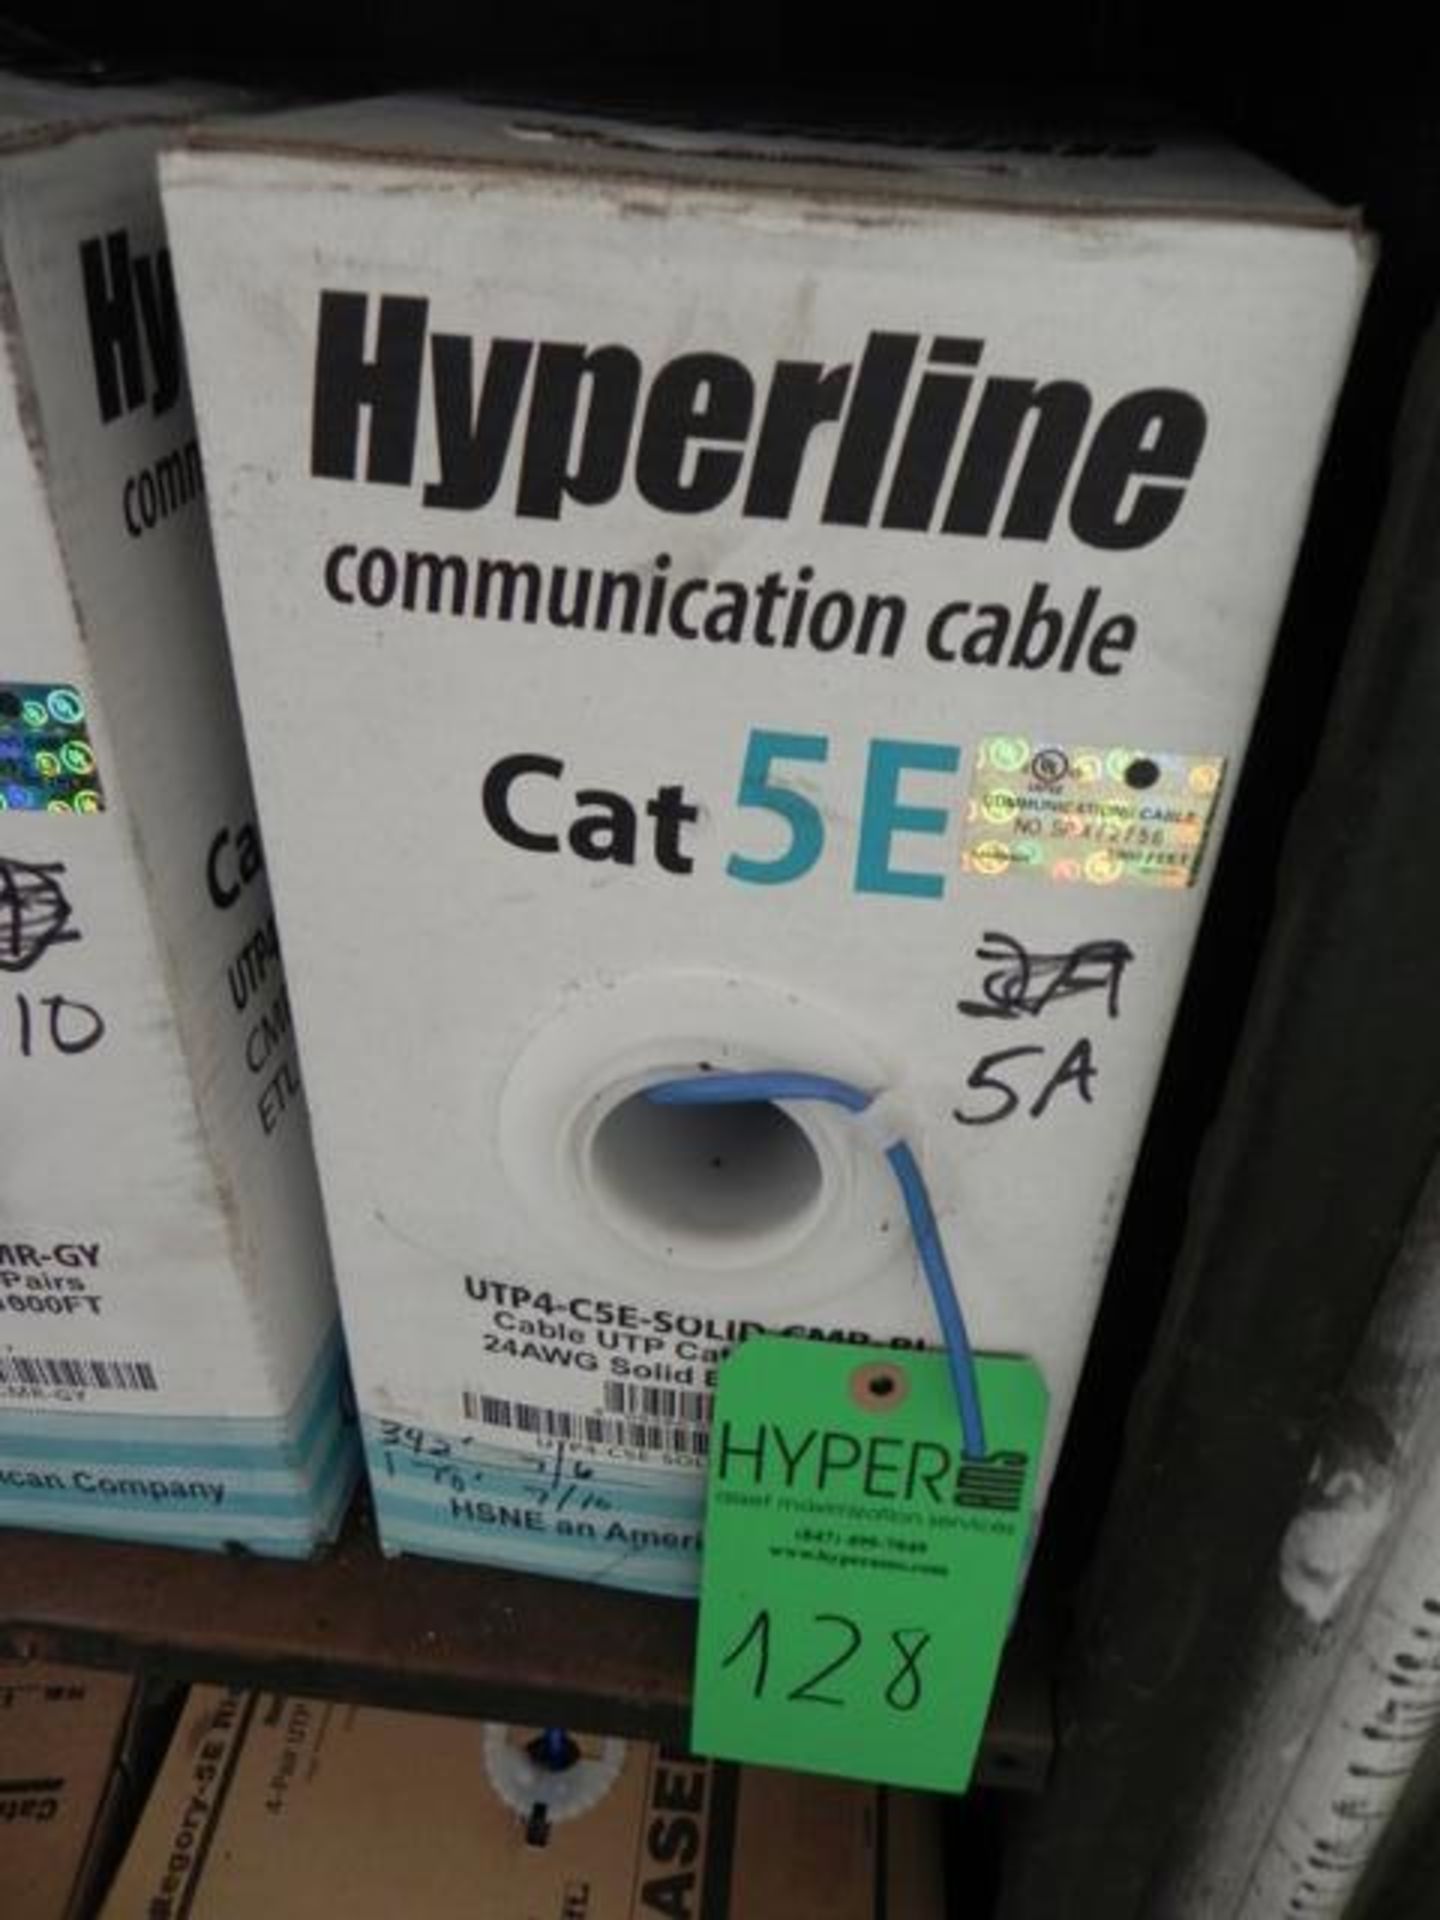 Hyperline Communication Cable Cat SEUTP4 - CSE - SOLID - CPM 2 BL 2/GV, CMP ETL verified 4000 FT - Image 2 of 5